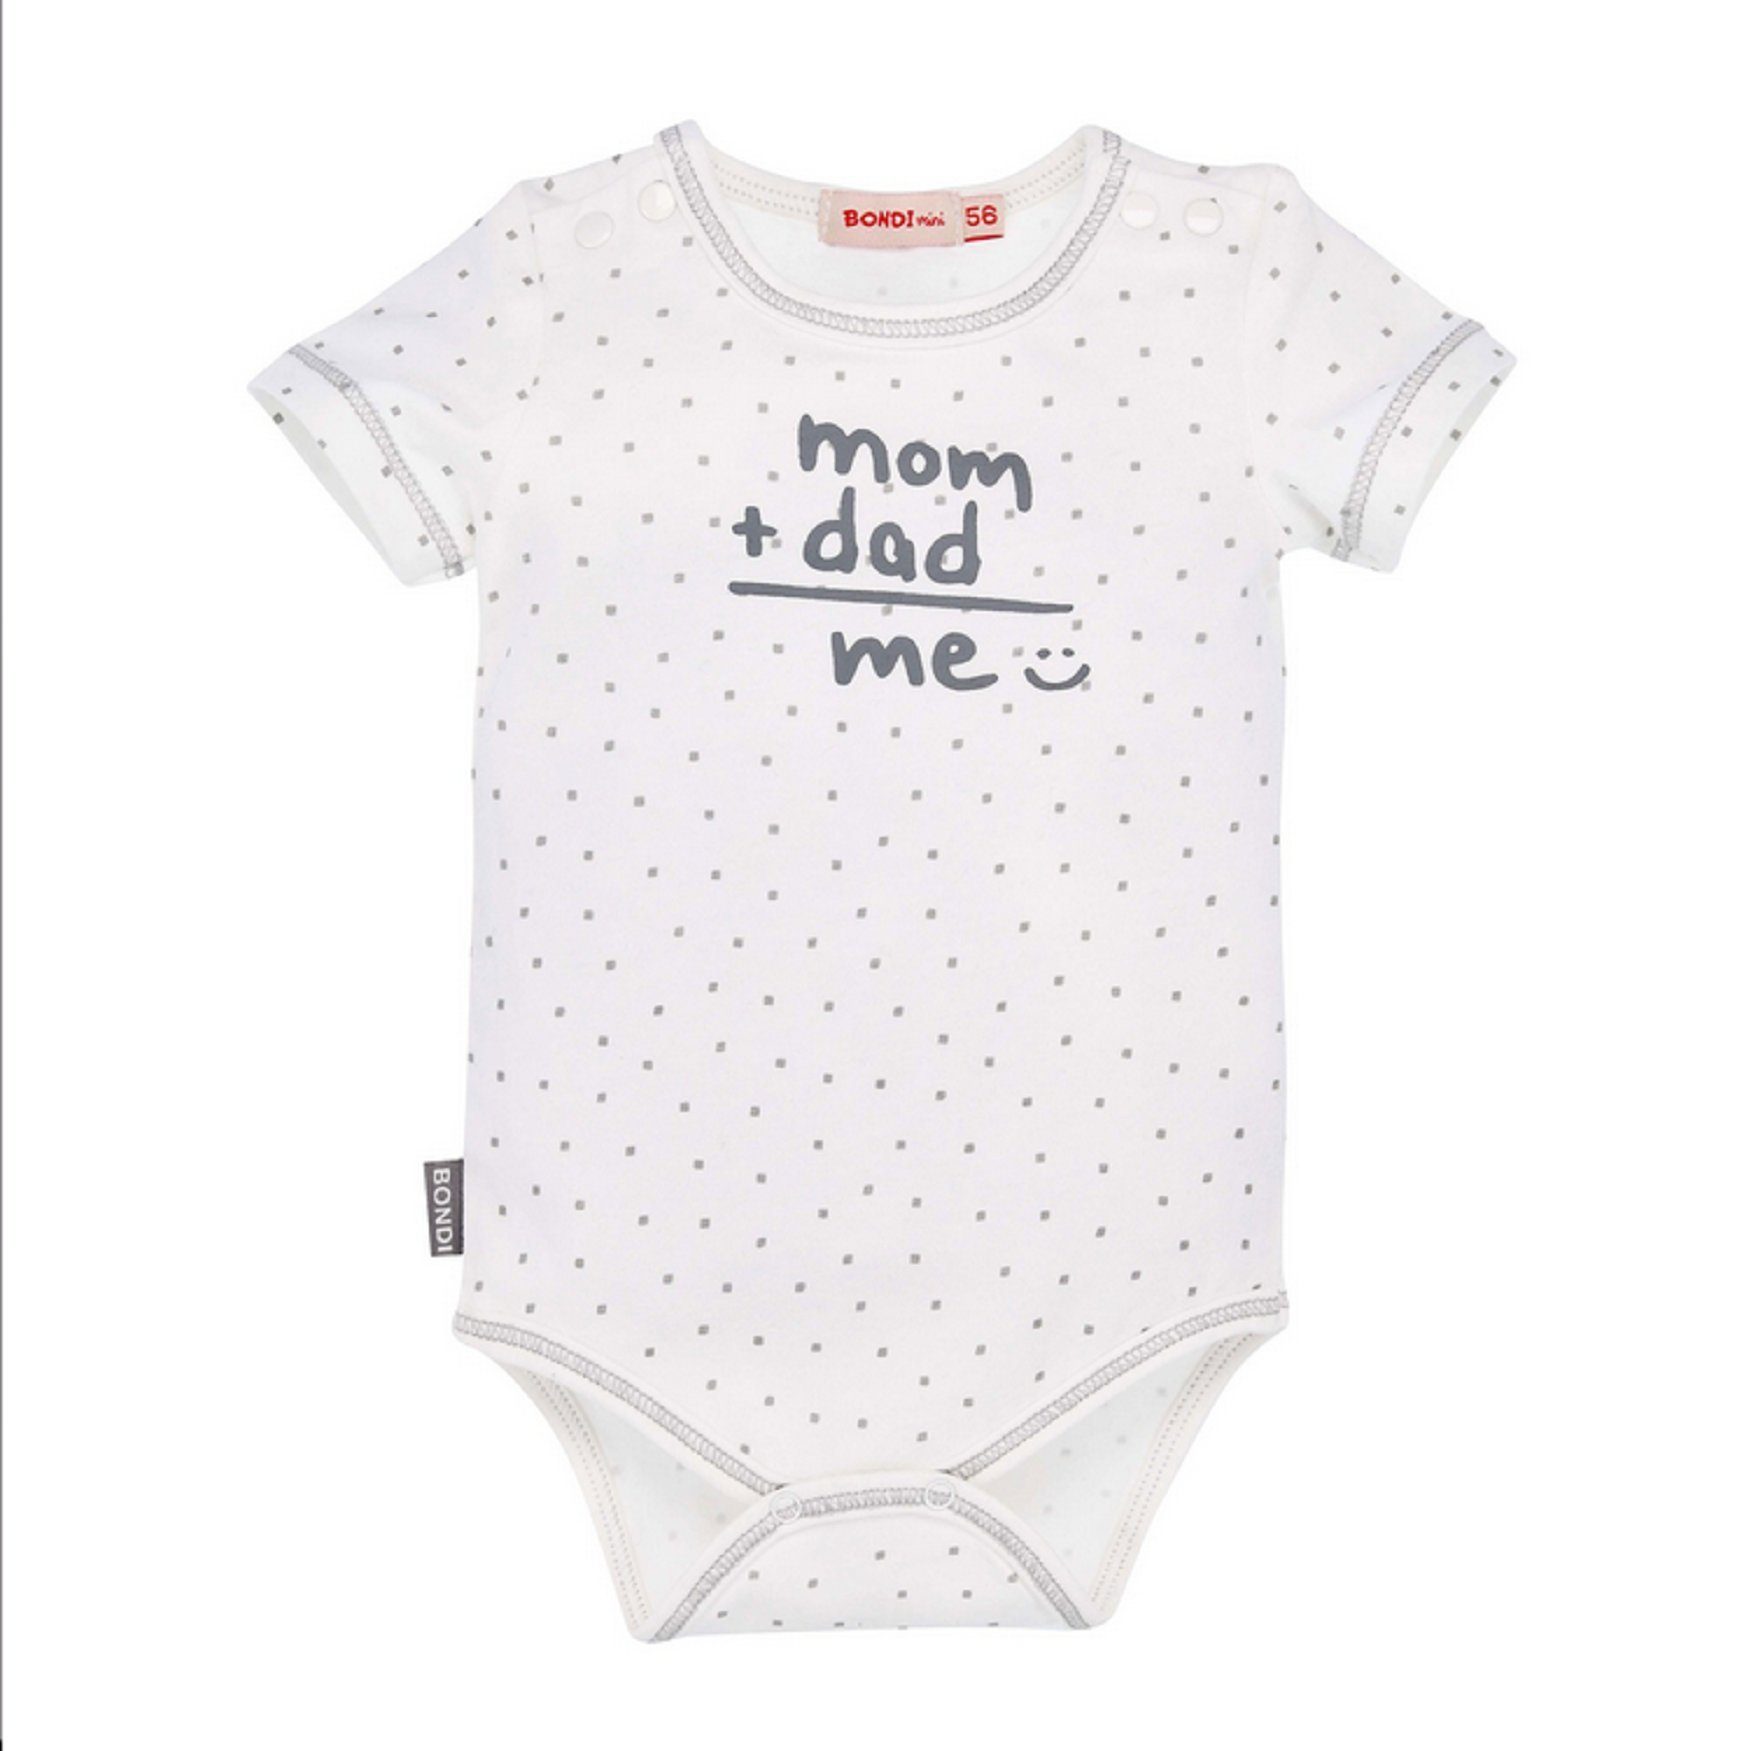 BONDI Kurzarmbody Baby Body "Mom+Dad=Me", weiss grau 93672, gepunktet, Body mit Spruch mit lustigen Print